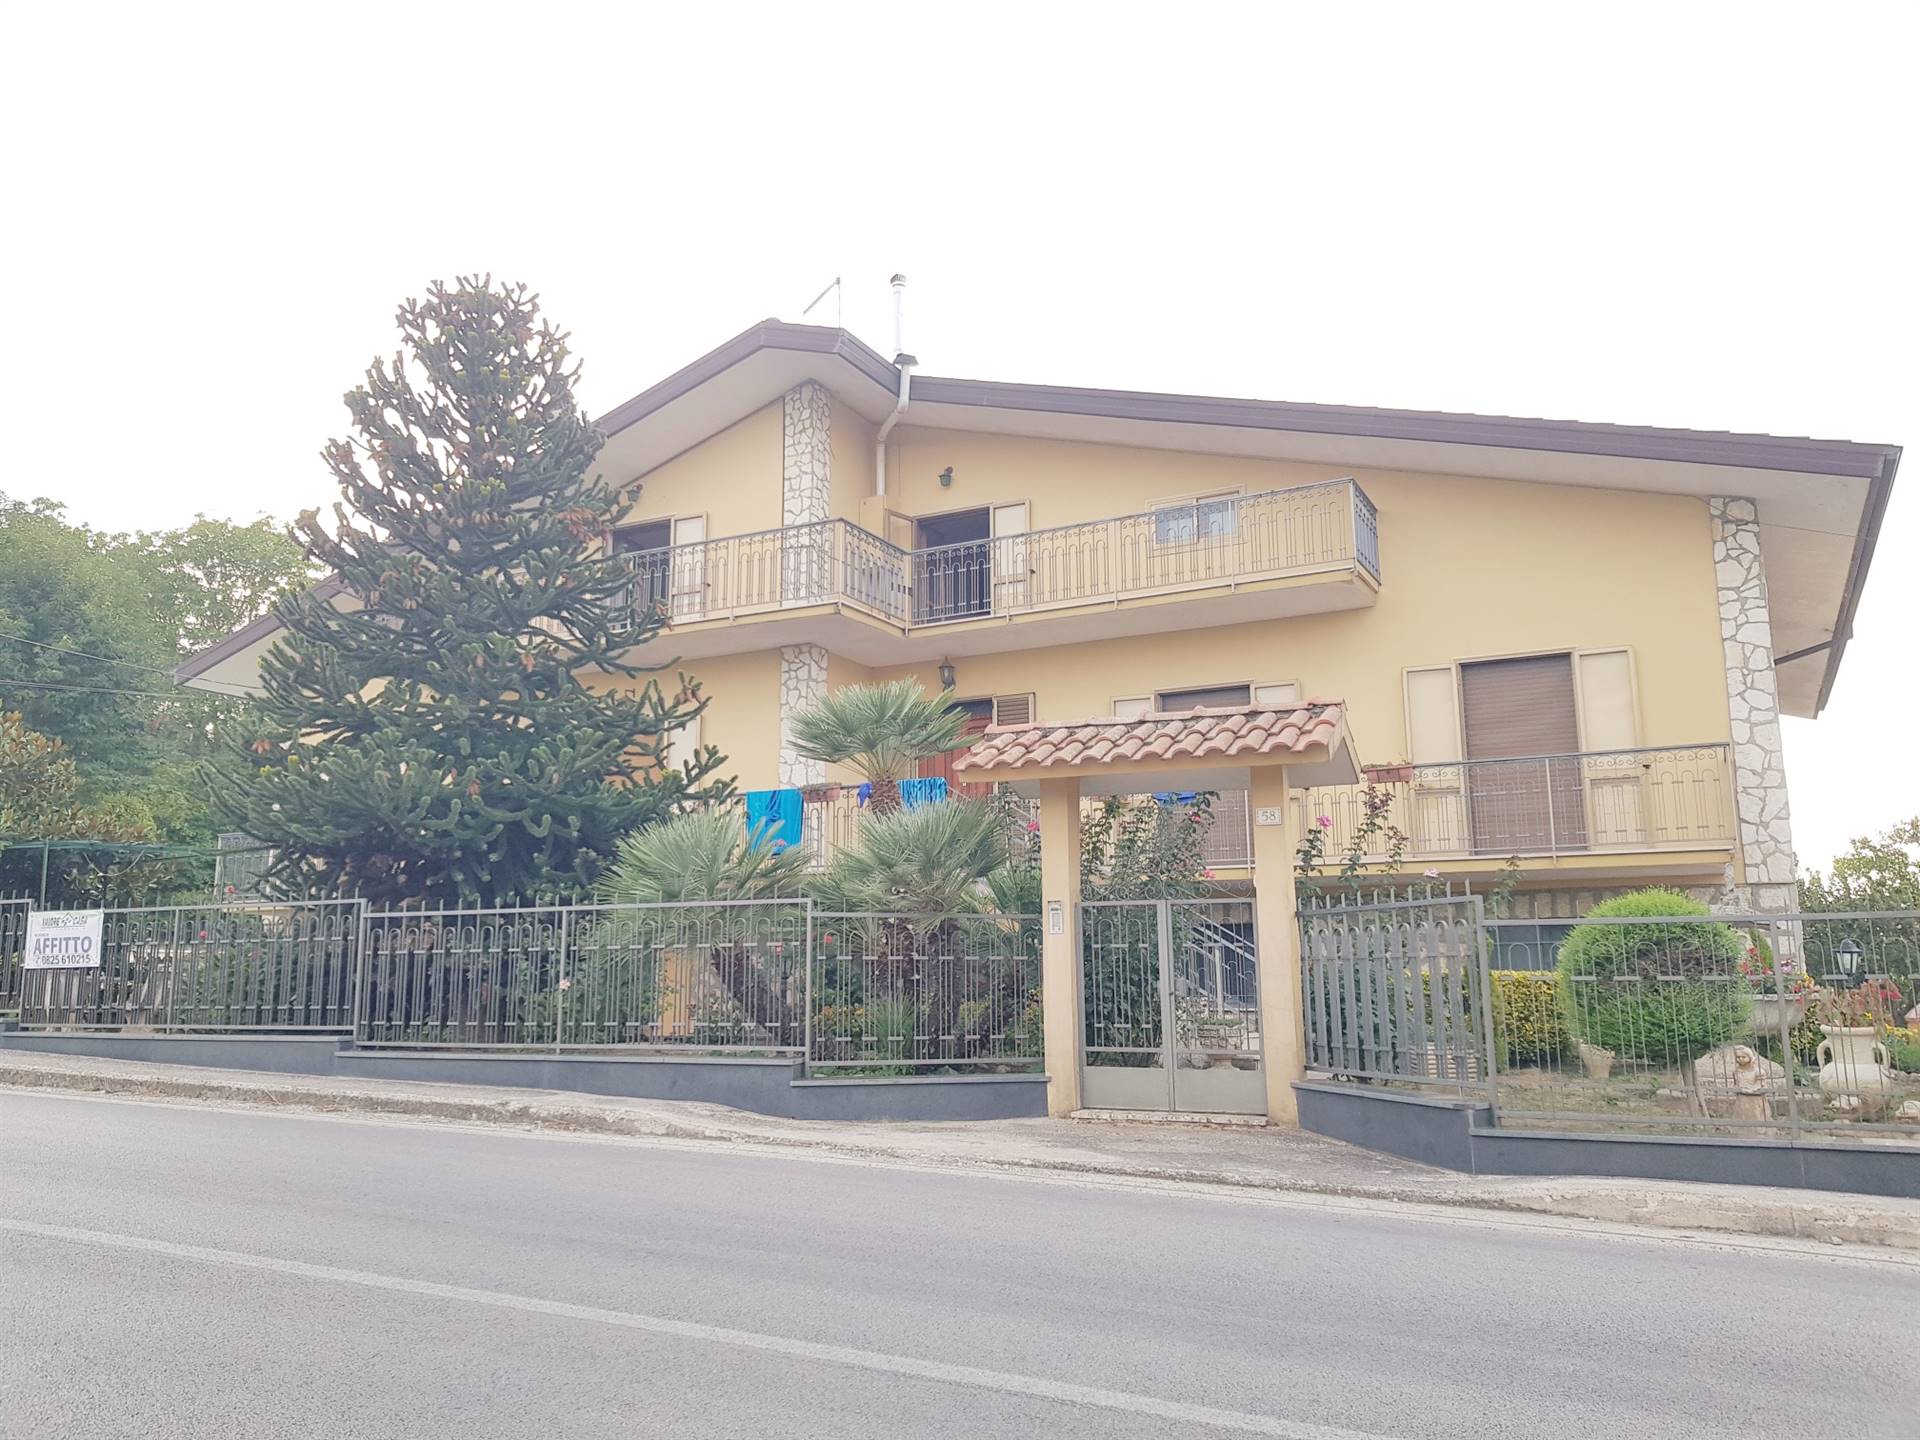 Appartamento in affitto a Montefalcione, 4 locali, zona Zona: Castelrotto, prezzo € 250 | CambioCasa.it